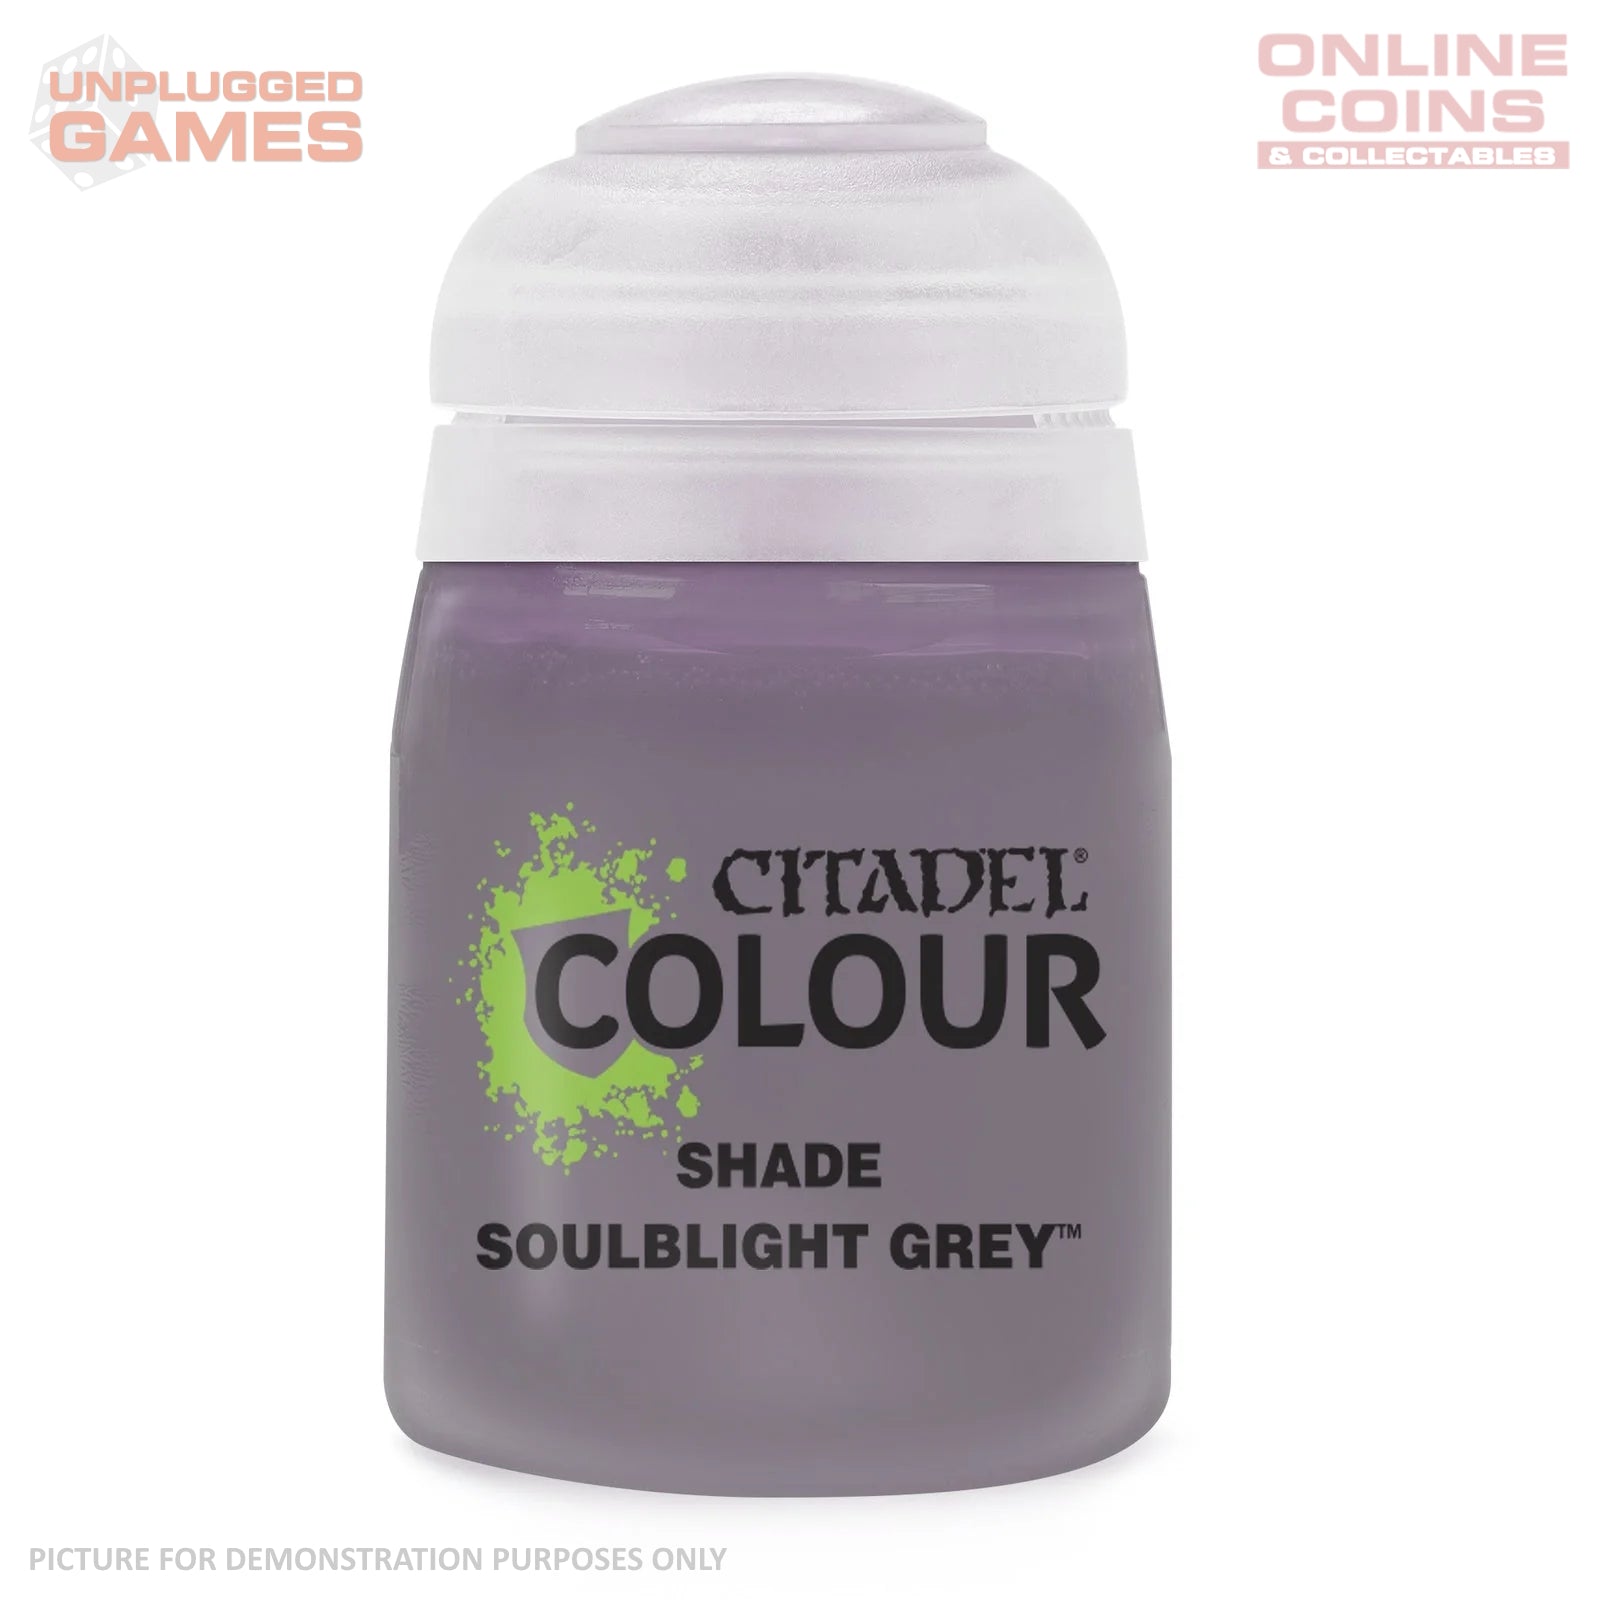 Citadel Shade - 24-35 Soulblight Grey